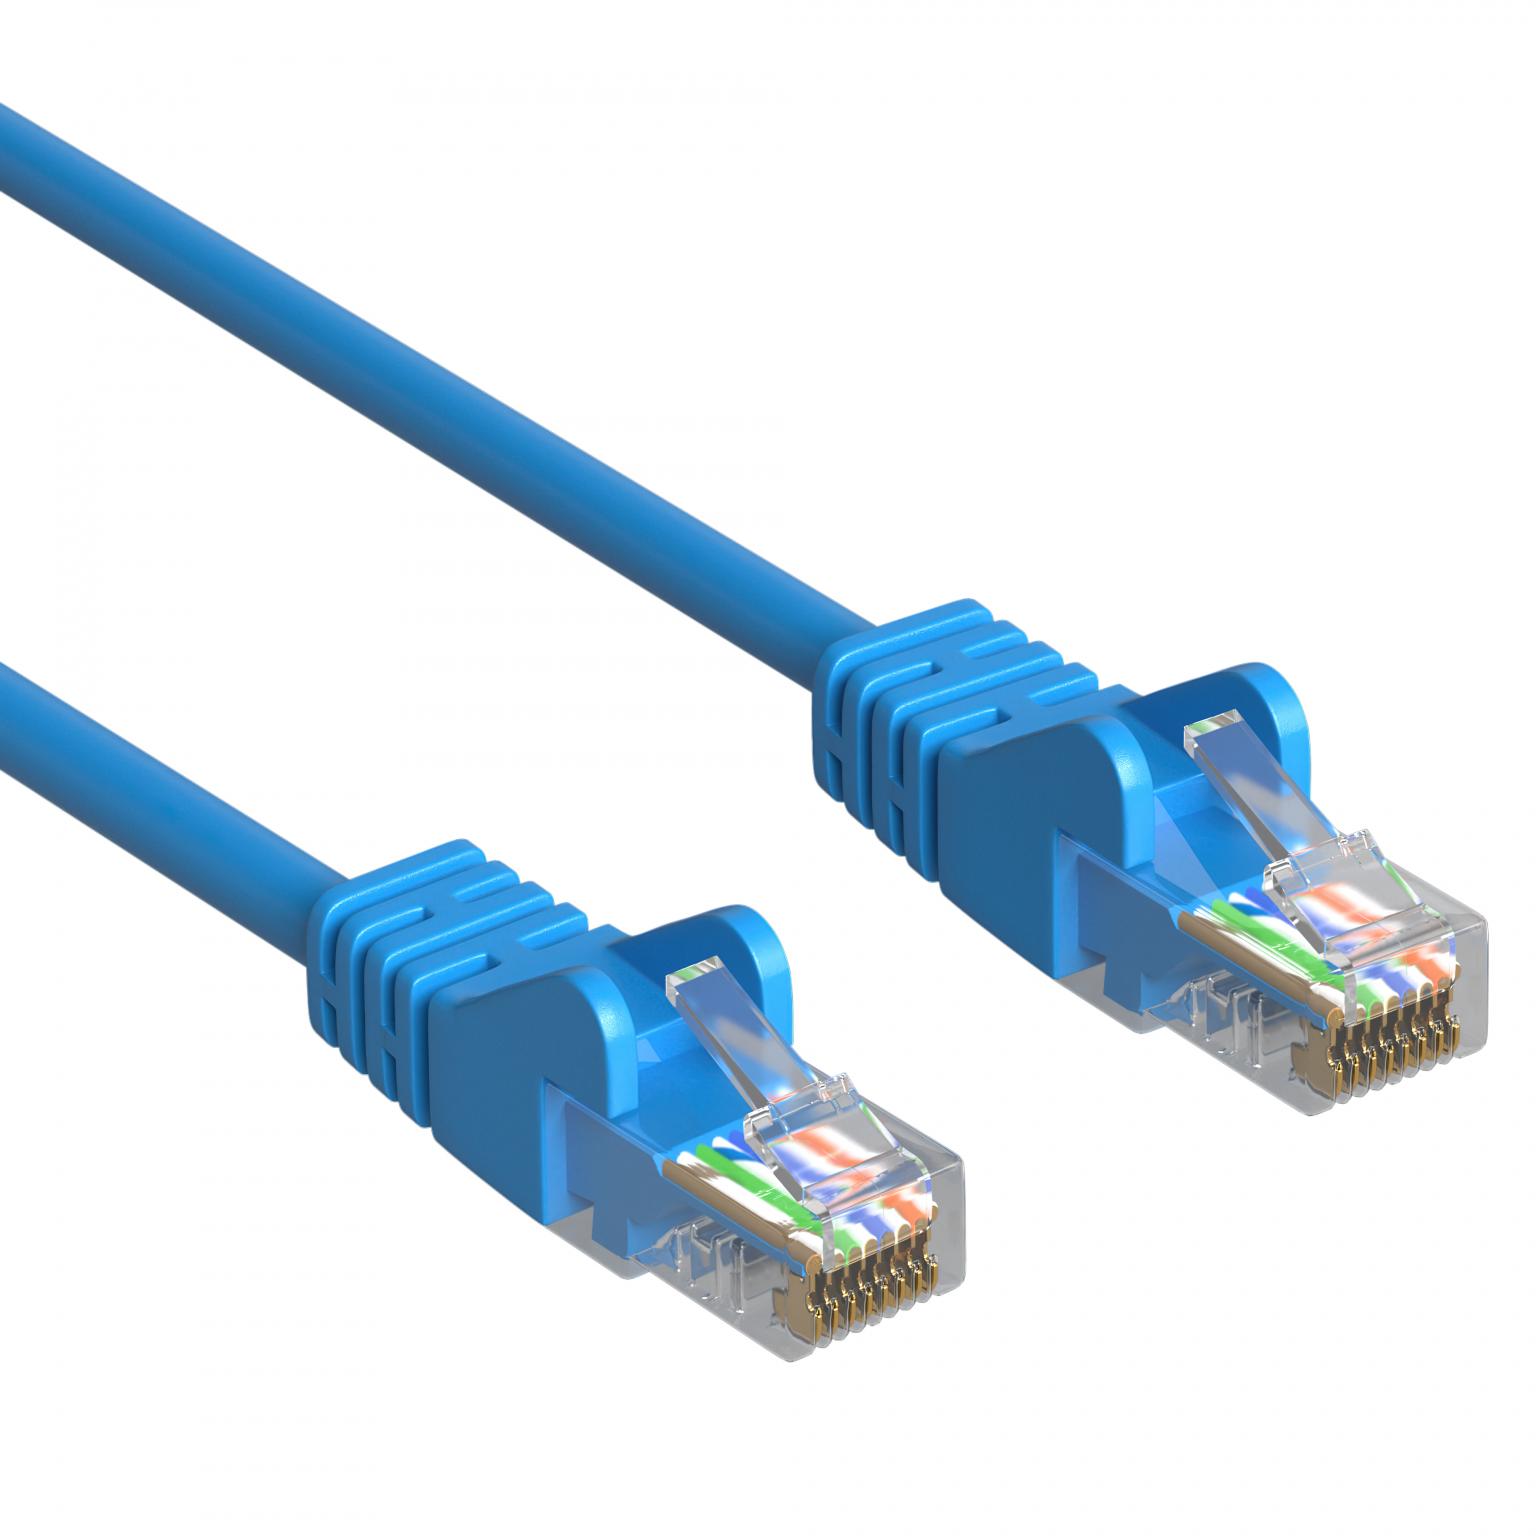 atleet insluiten Assimileren UTP CAT.5 NETWERK KABEL - Type: UTP CAT5 netwerkkabel, (patch kabel),  Lengte: 1.5 Meter, Kleur: Blauw.